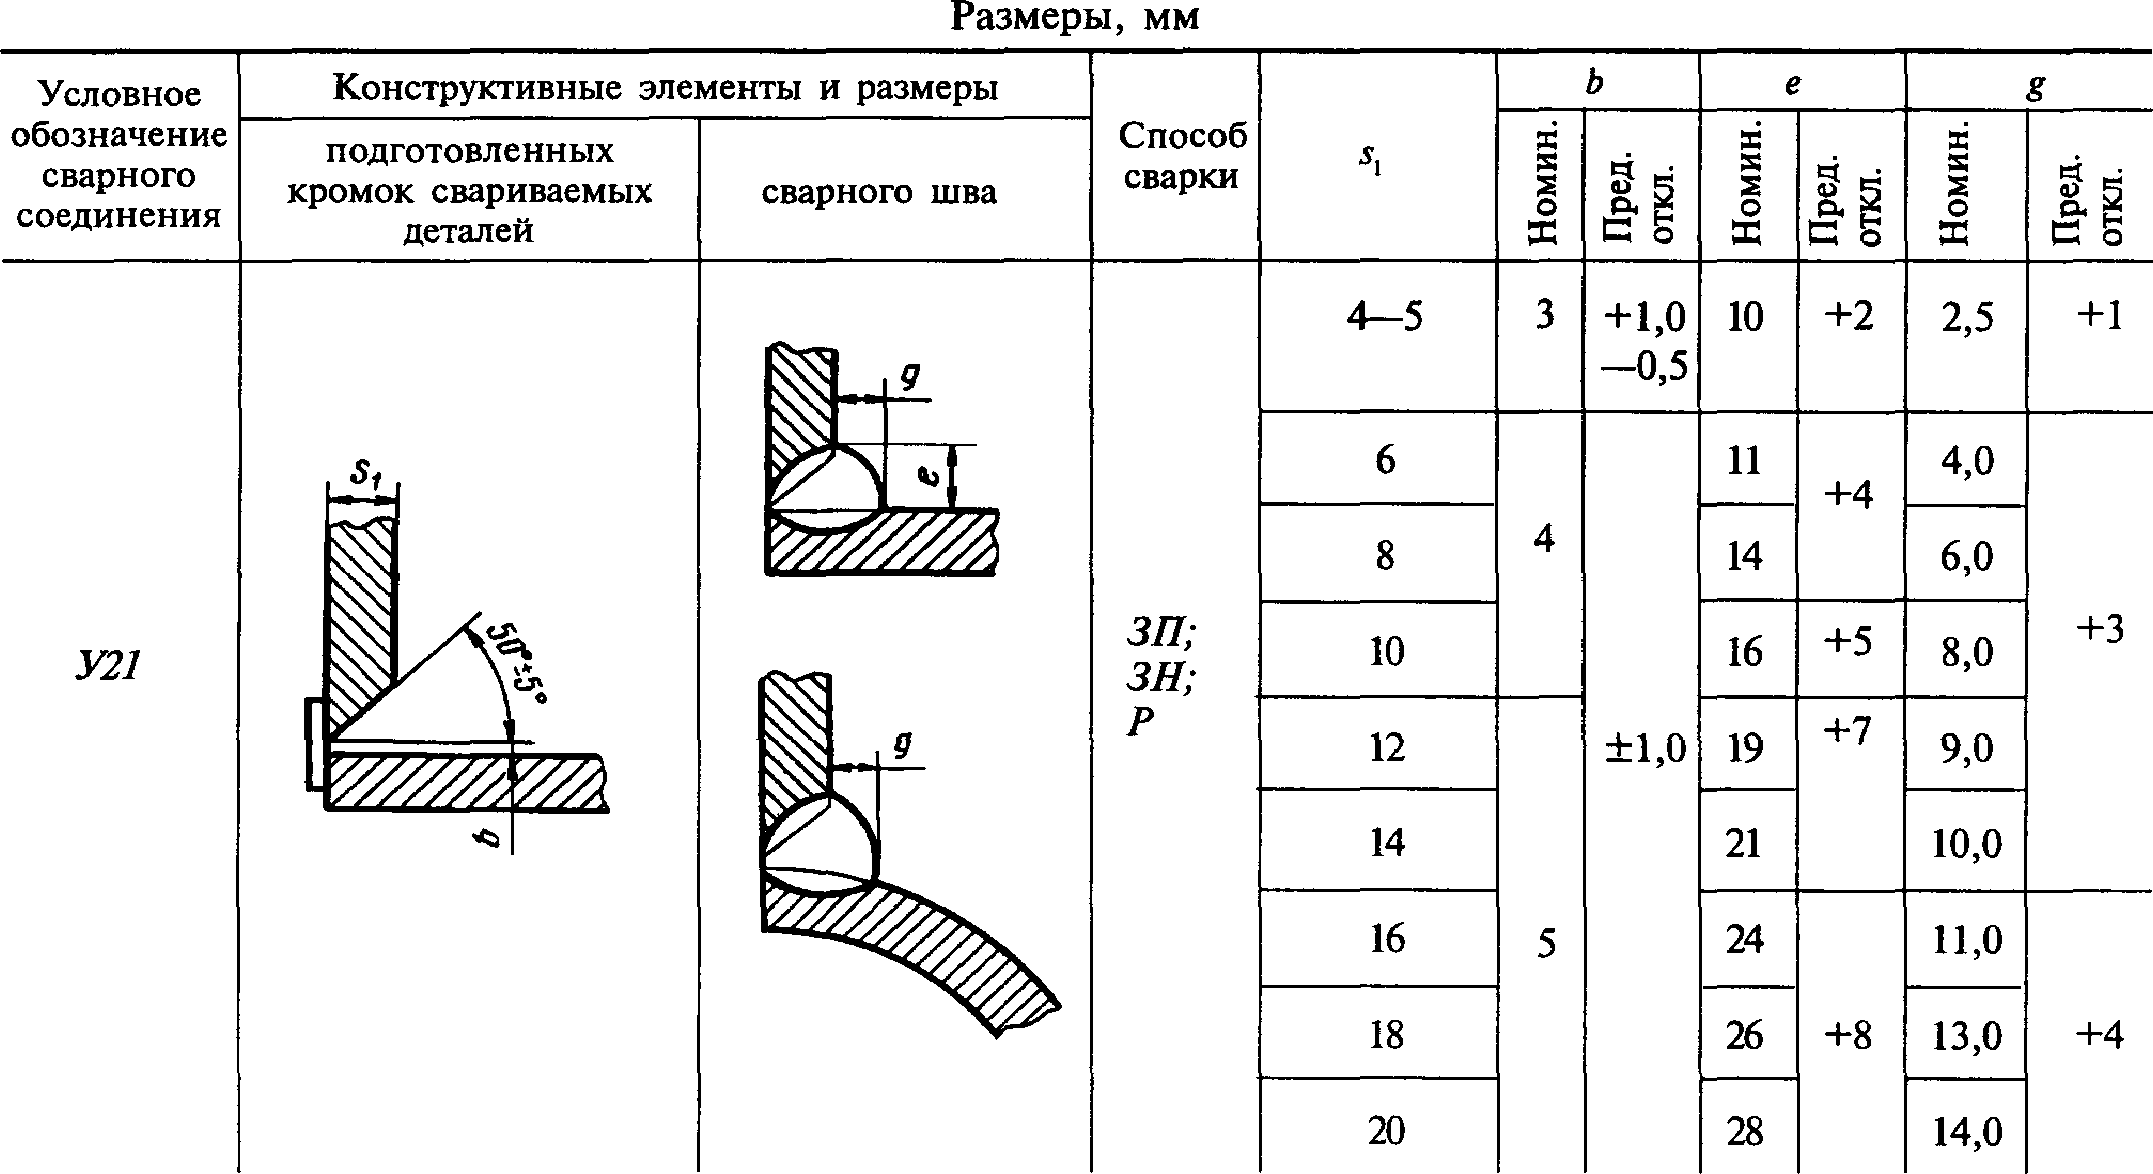 Расчет длины катета сварного шва от толщины металла для различных видов сварочных швов